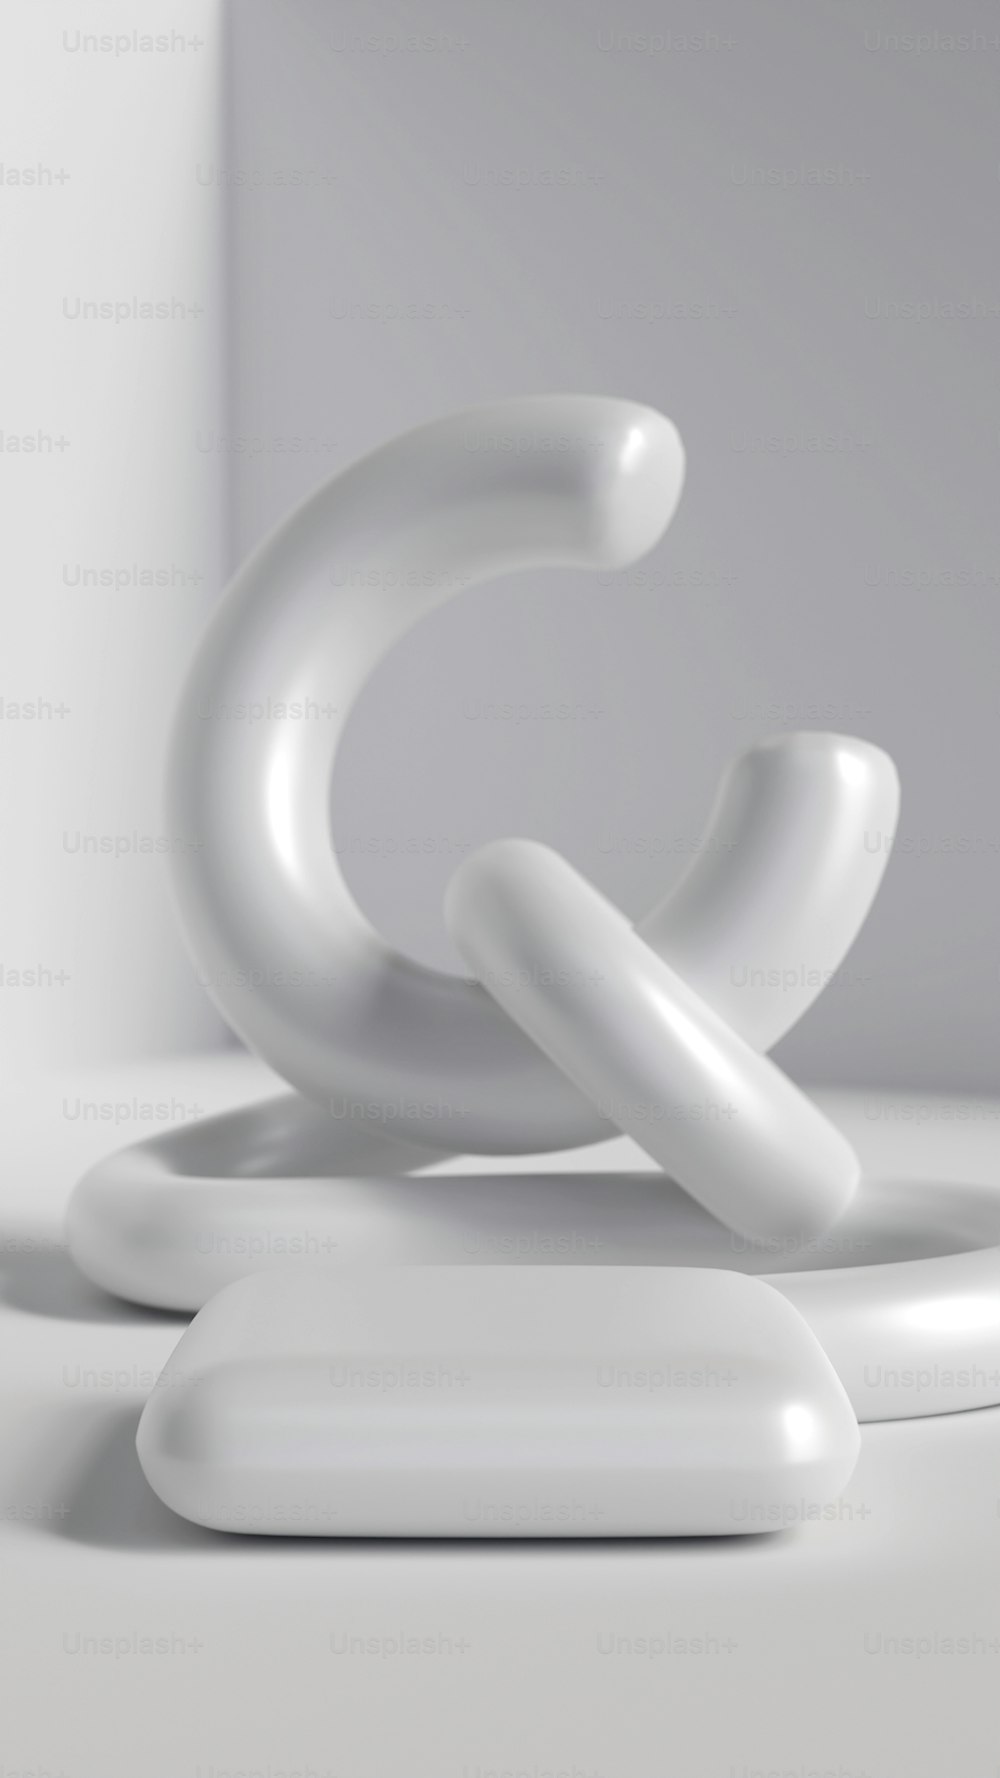 Ein weißes Objekt, das wie eine Skulptur aussieht